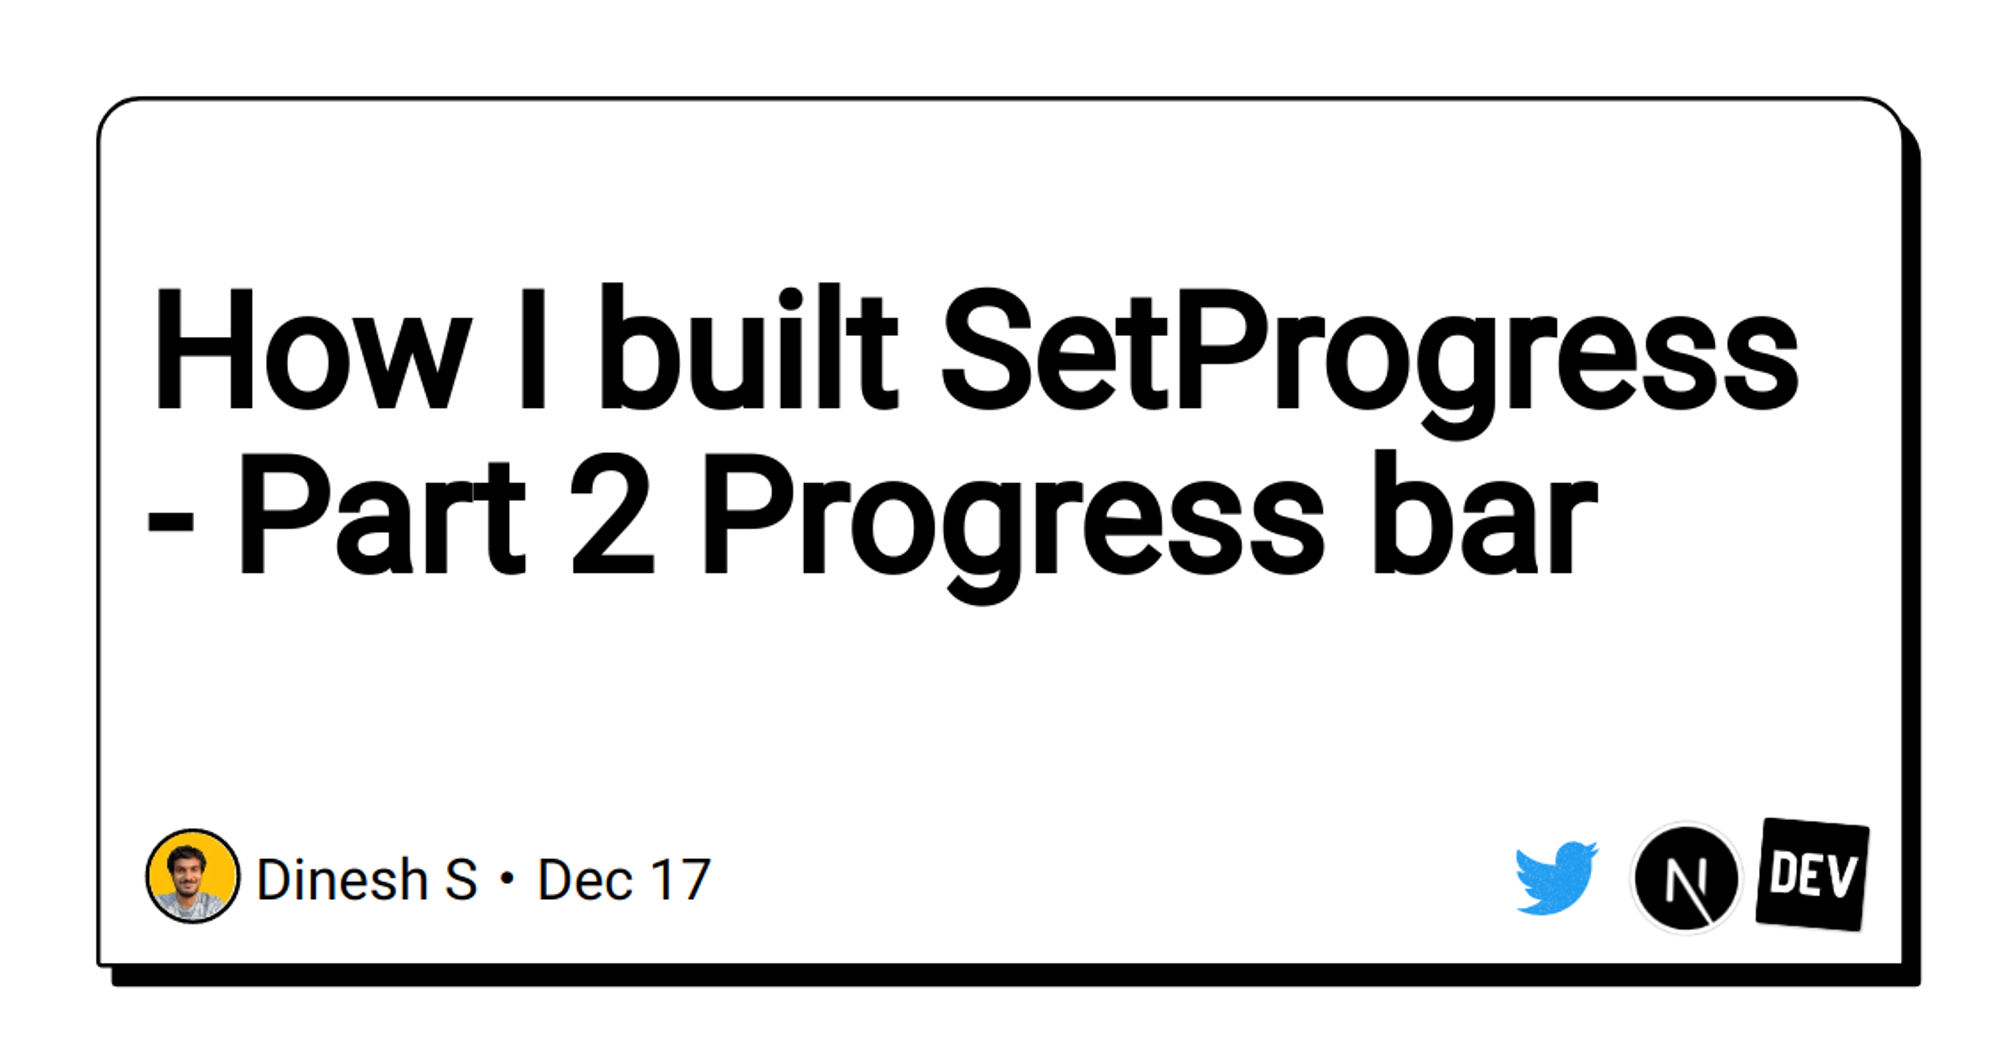 How I built SetProgress - Part 2 Progress bar